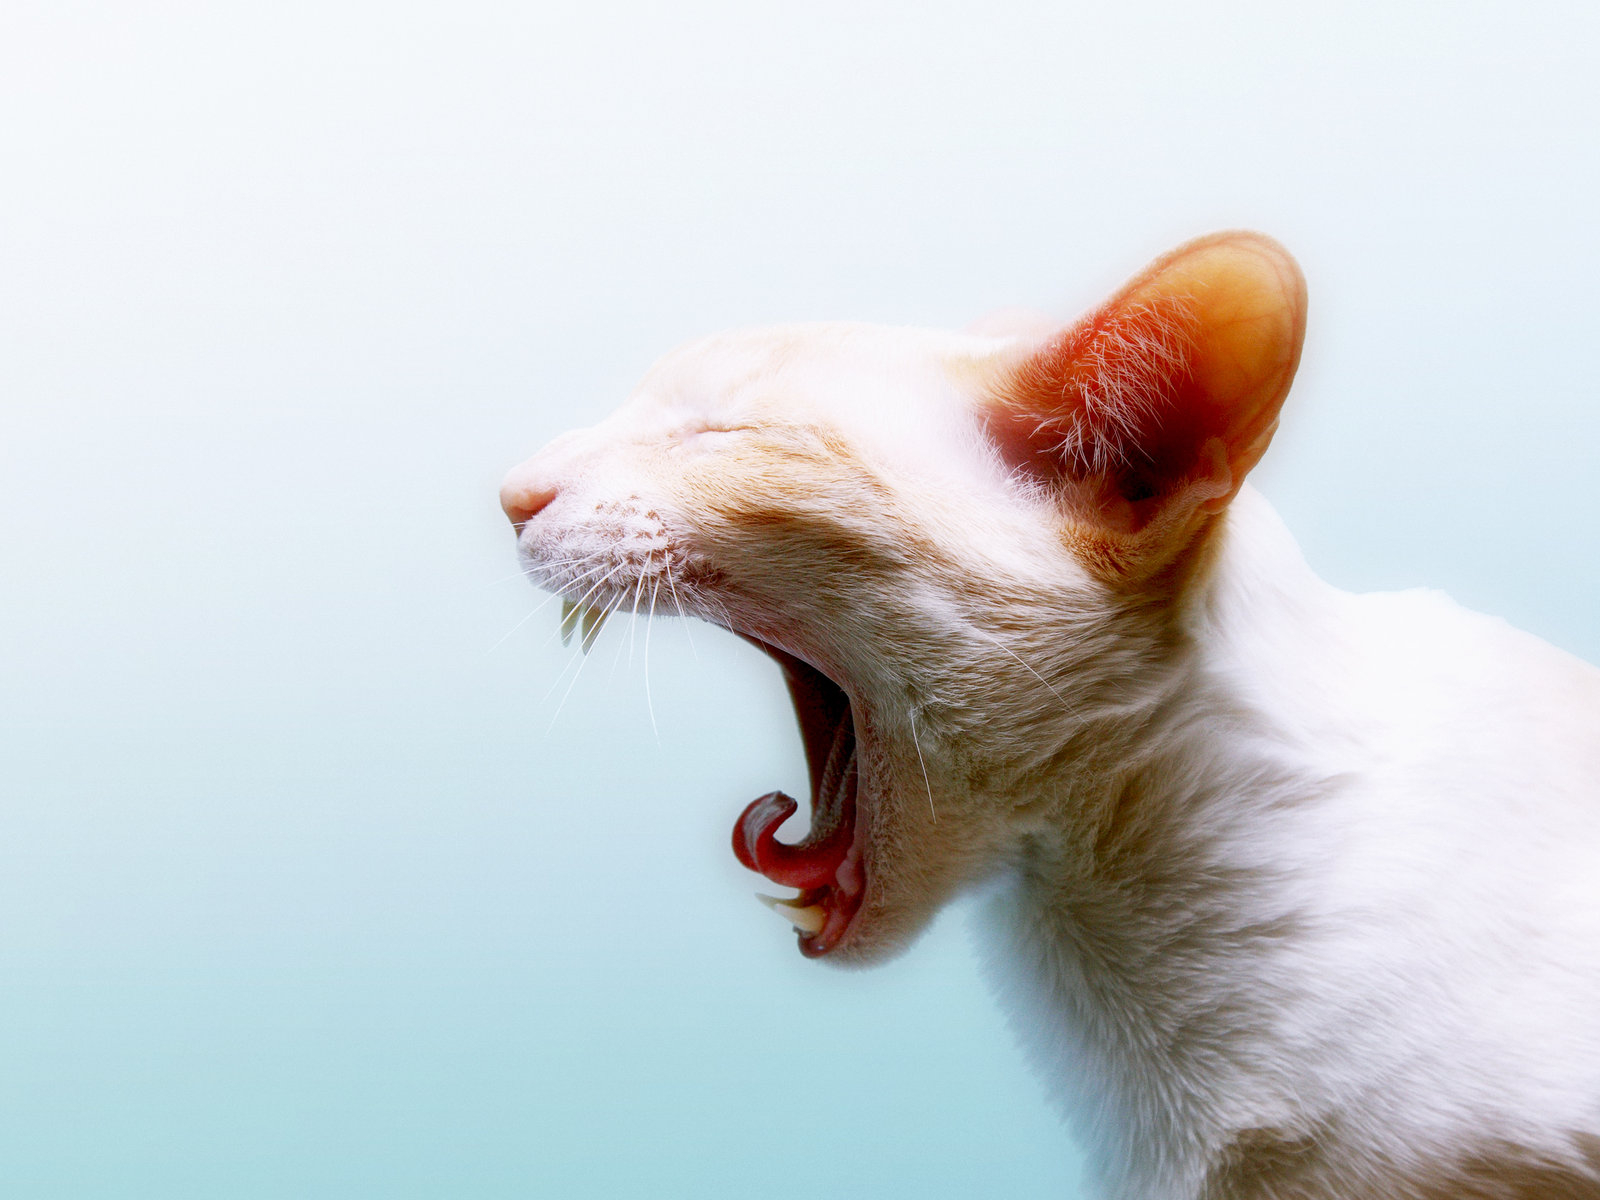 Гингивит у кошек. Неприятный запах изо рта кошки — самый яркий признак гингивита.